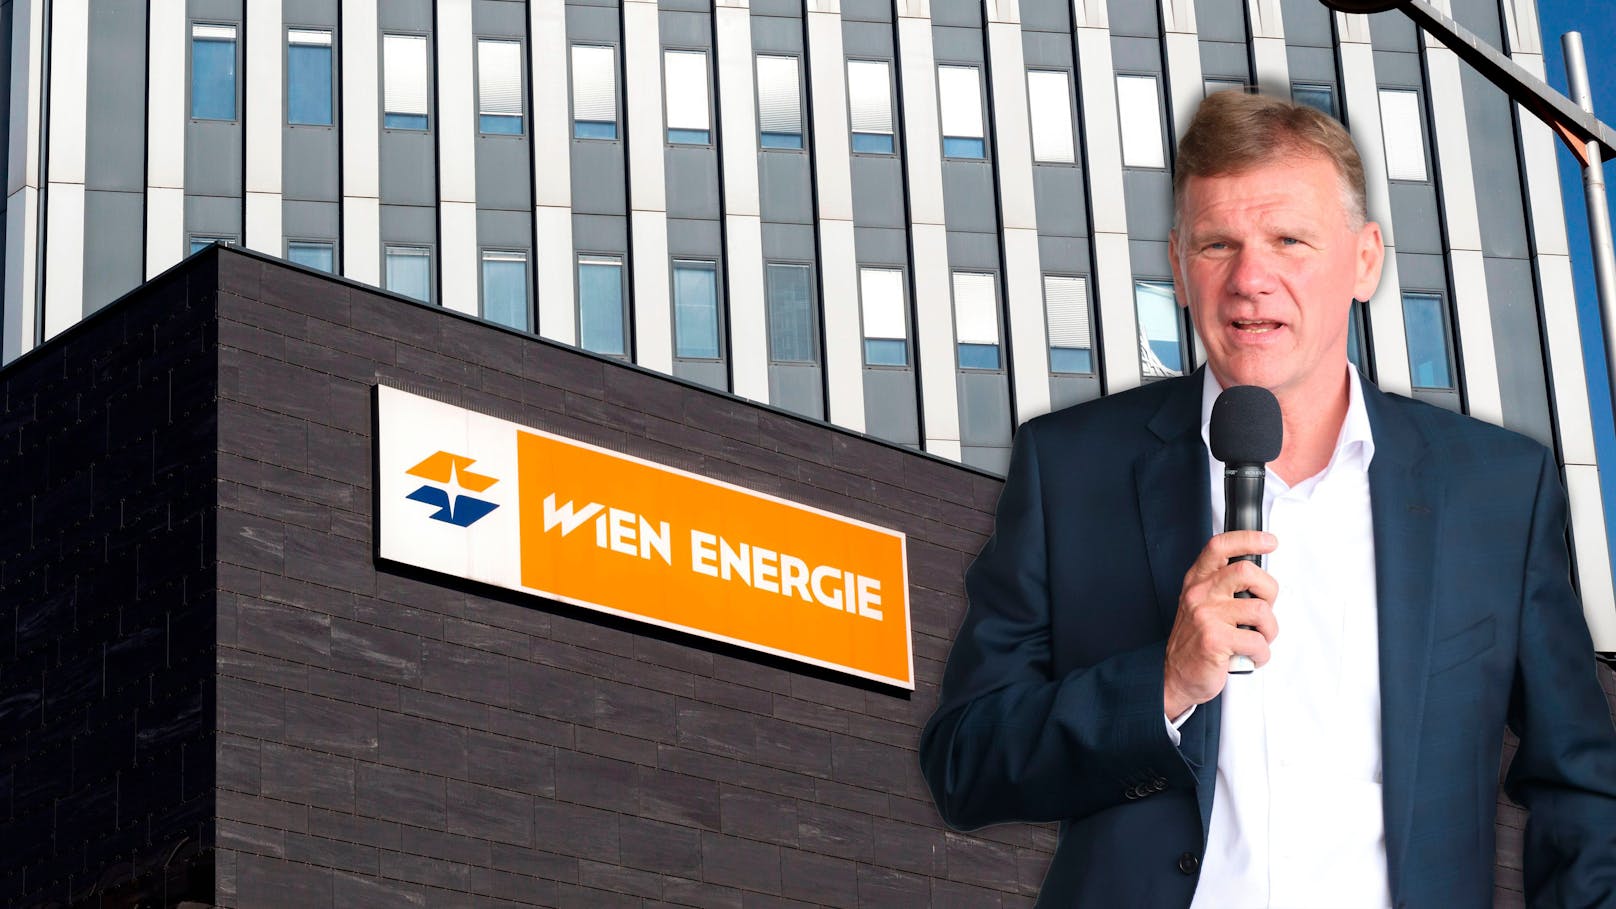 Wir brennen für Strom – Mega-Gewinn für Wien Energie